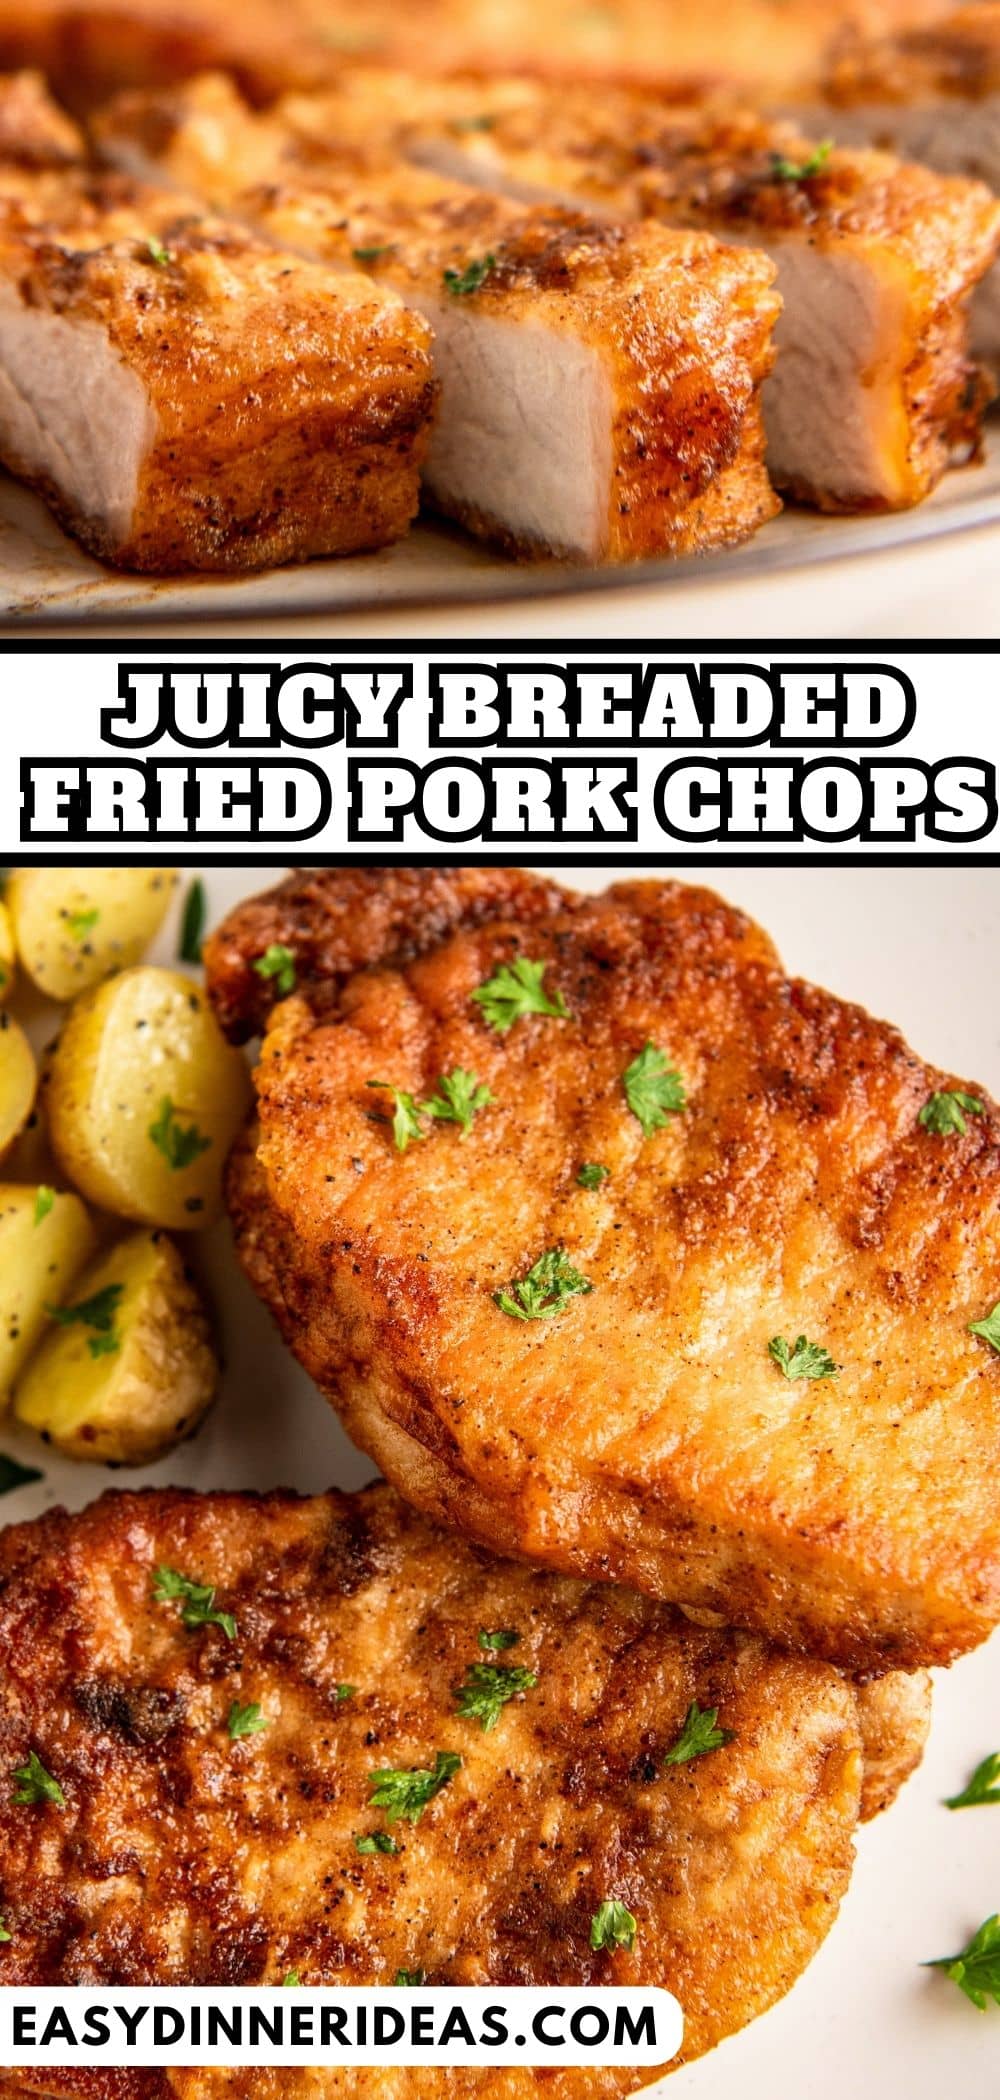 Fried Pork Chops | Easy Dinner Ideas